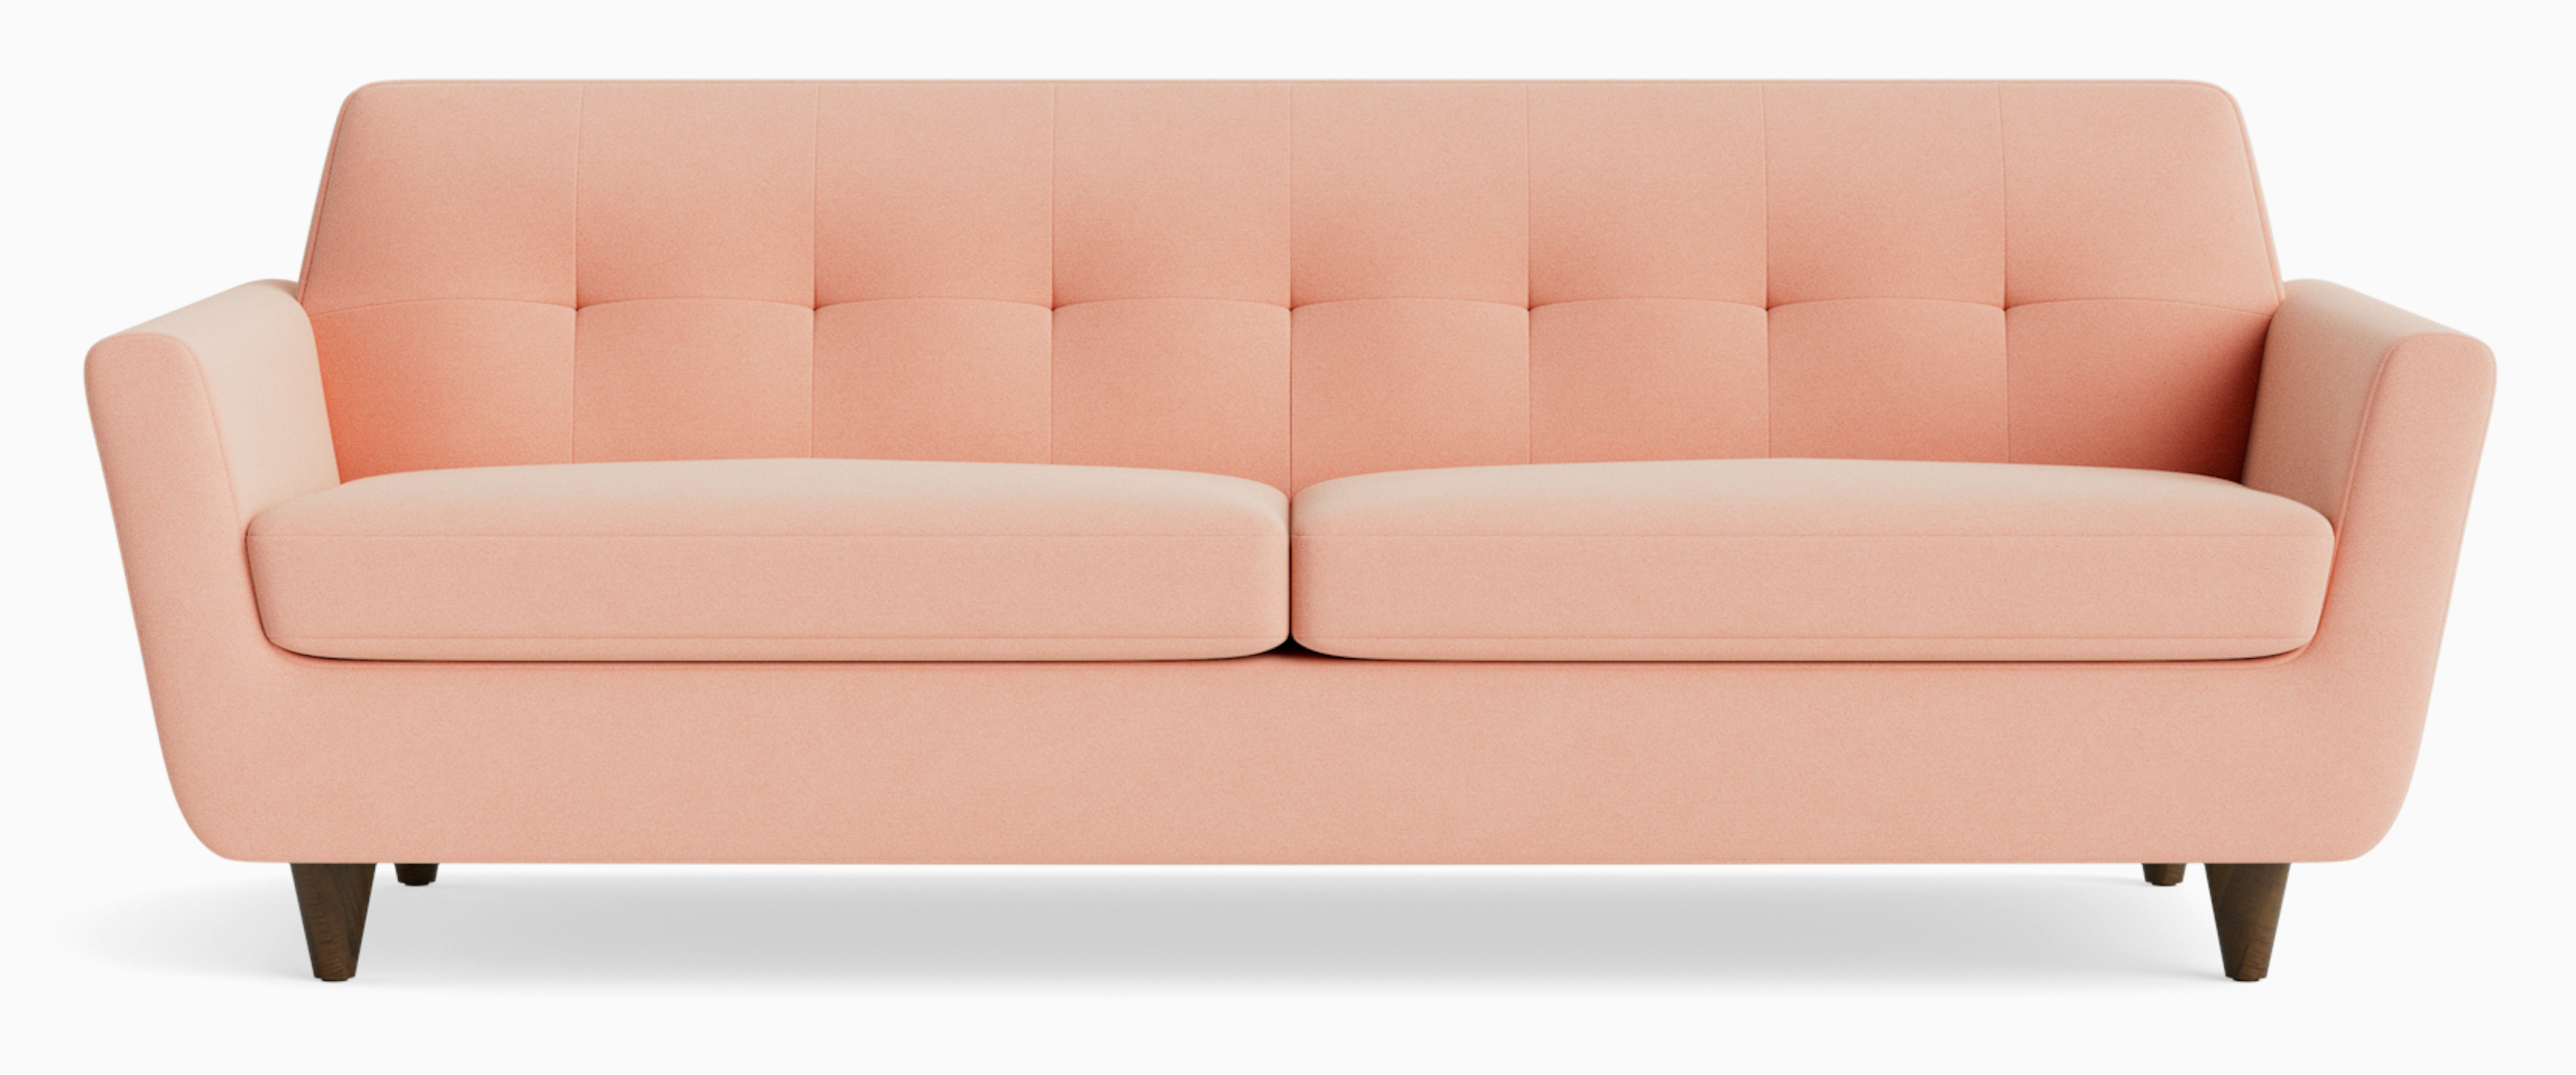 joybird sofa bed review